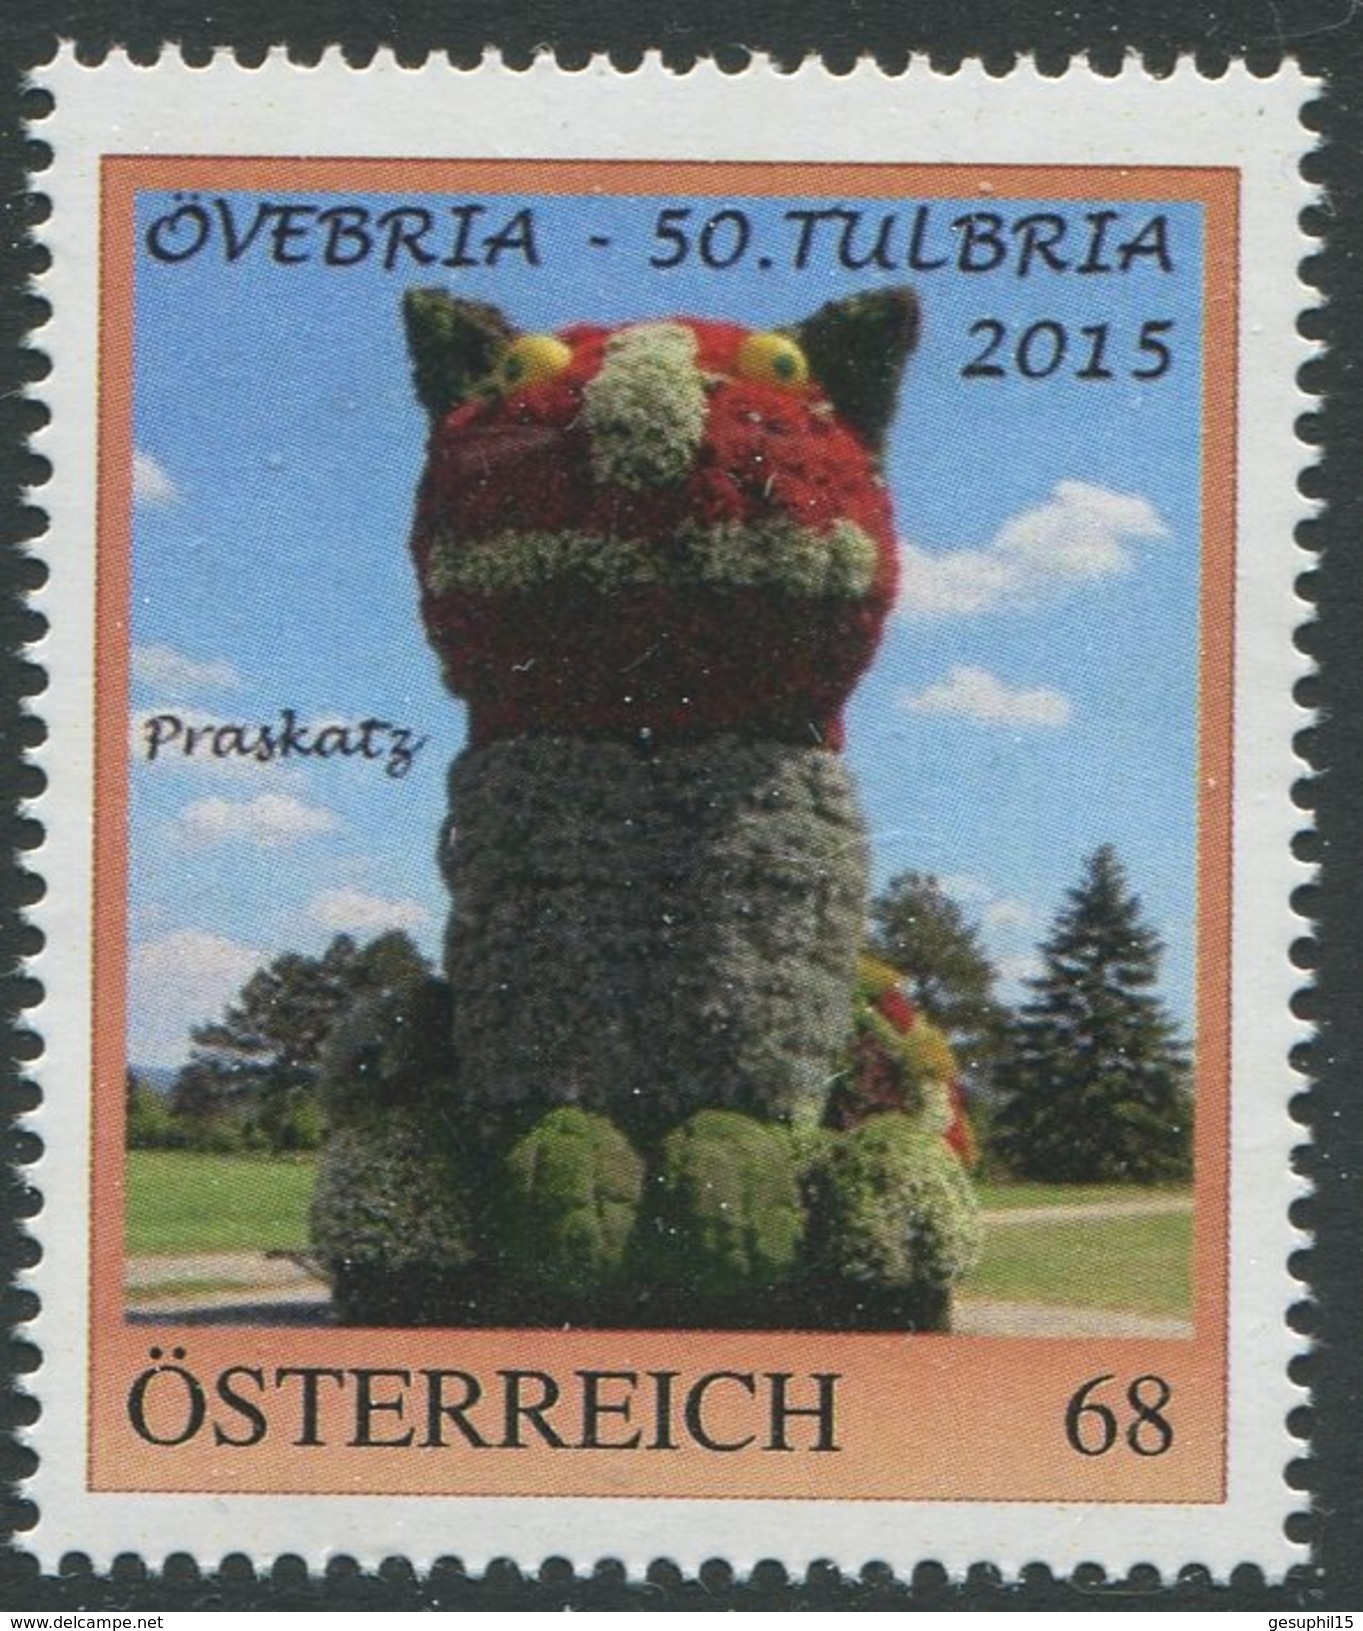 ÖSTERREICH / 8113957 / ÖVEBRIA - 50. TULBRIA 2015 / Postfrisch / ** / MNH - Persoonlijke Postzegels